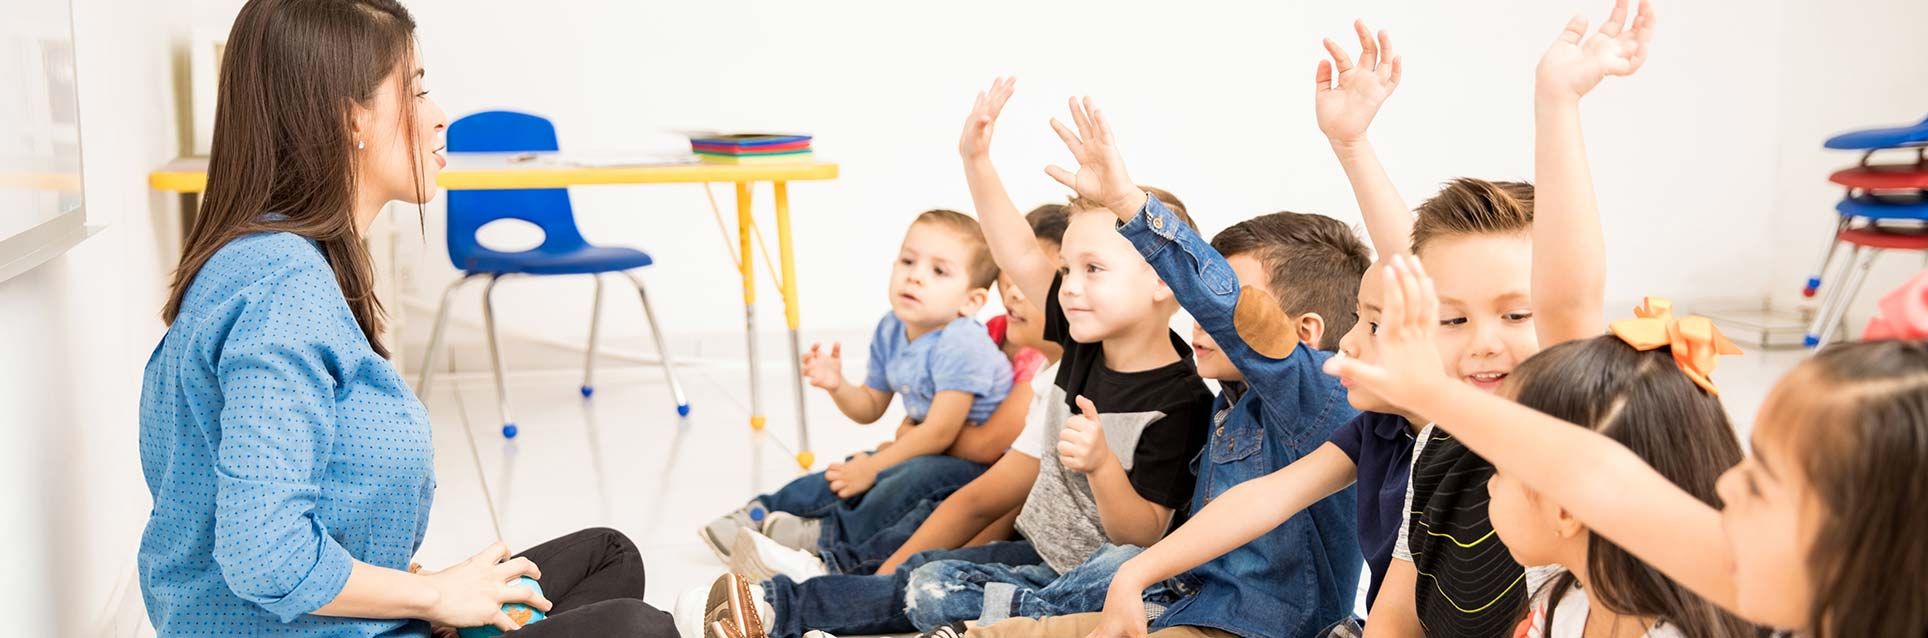 preschoolers raising hands